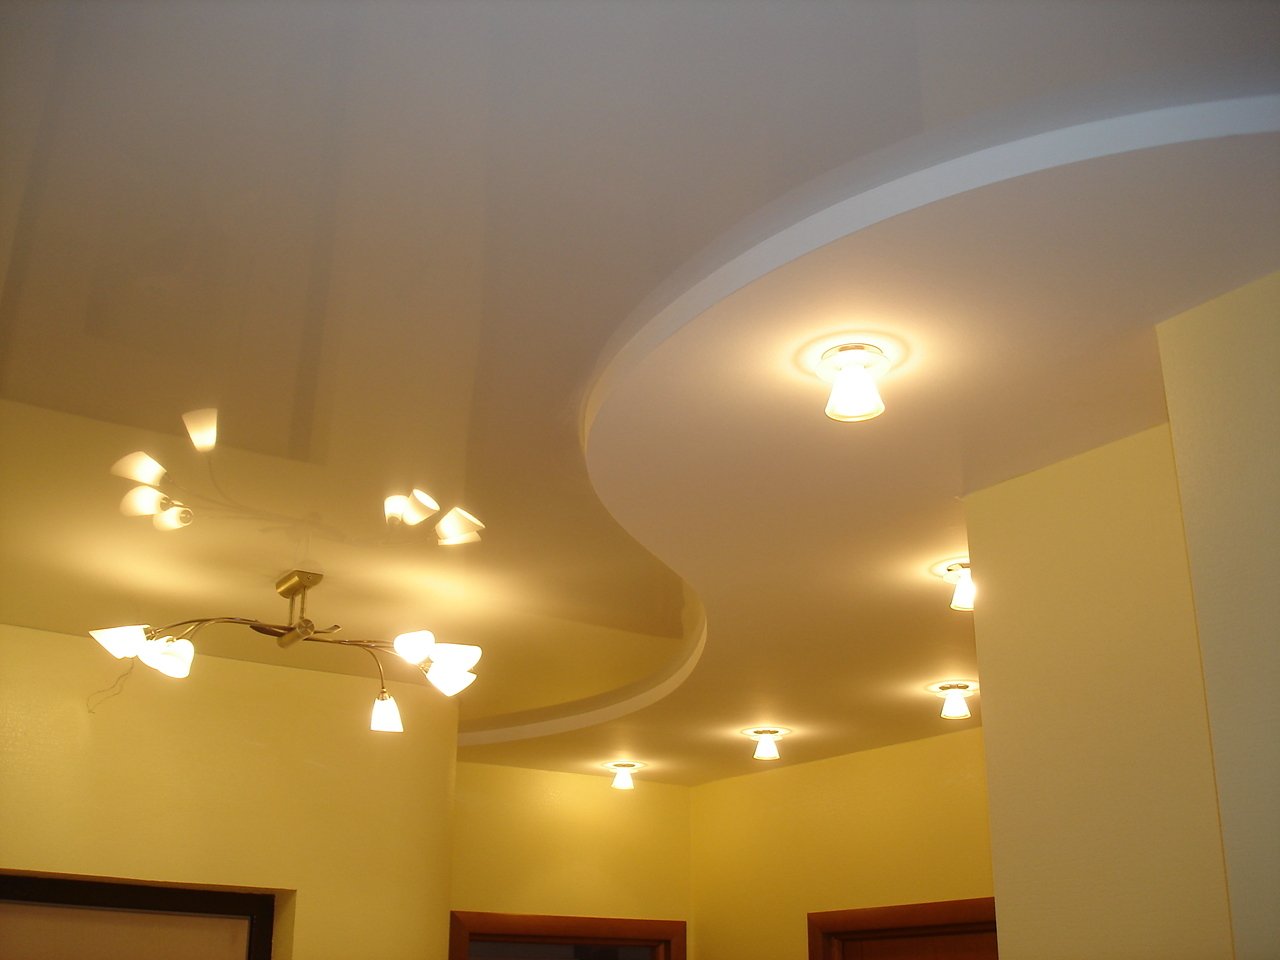 Как установить потолки из гипсокартона в коридоре - фото, дизайн